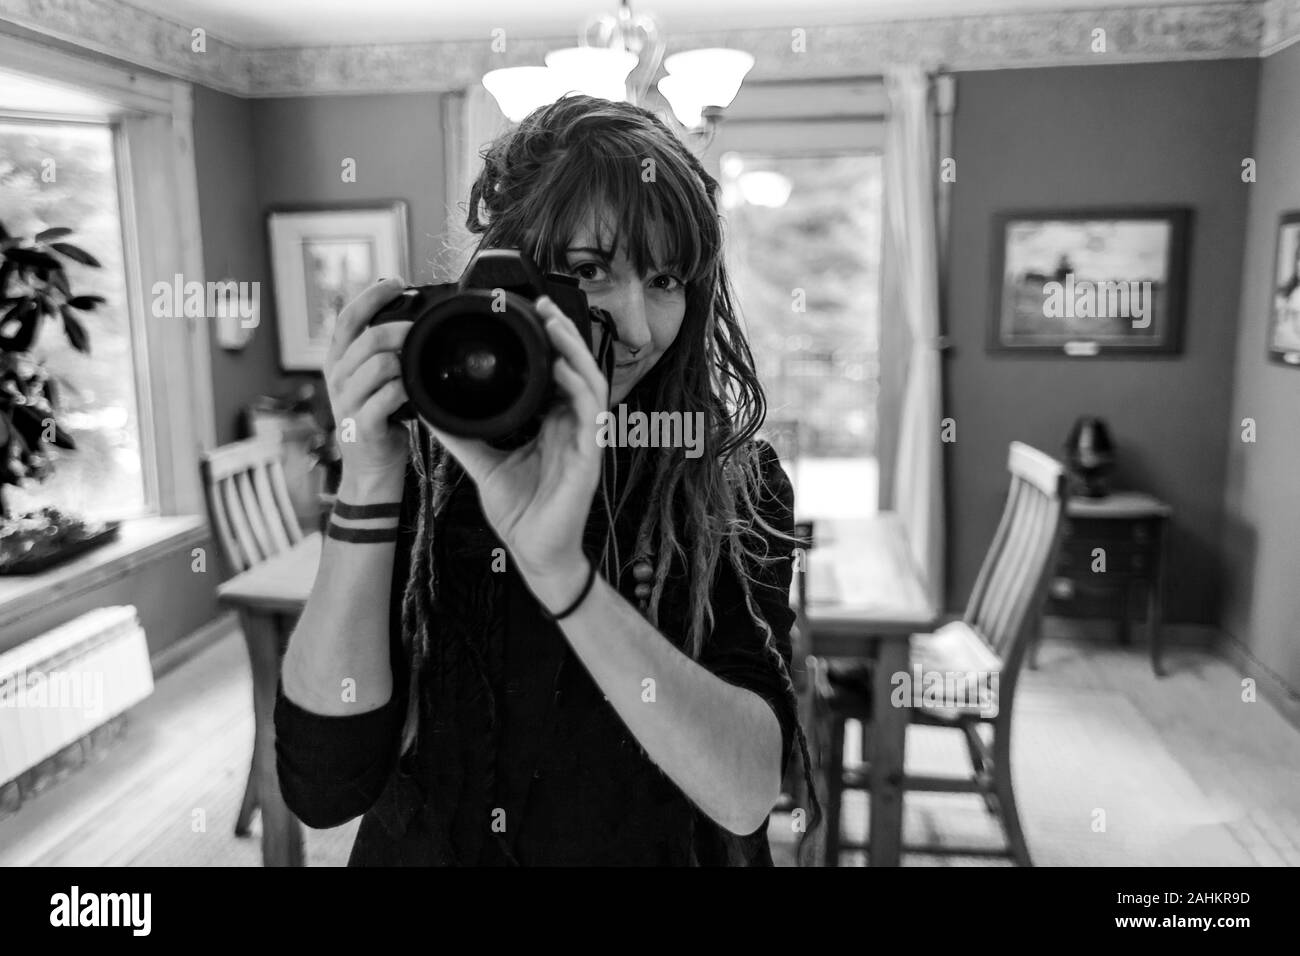 Schwarze und weiße Nahaufnahme Portrait von professionellen Fotografen hand-Holding eine DSLR-Kamera. Natürlich schönes Mädchen mit Dreadlocks und Tätowierungen. Stockfoto